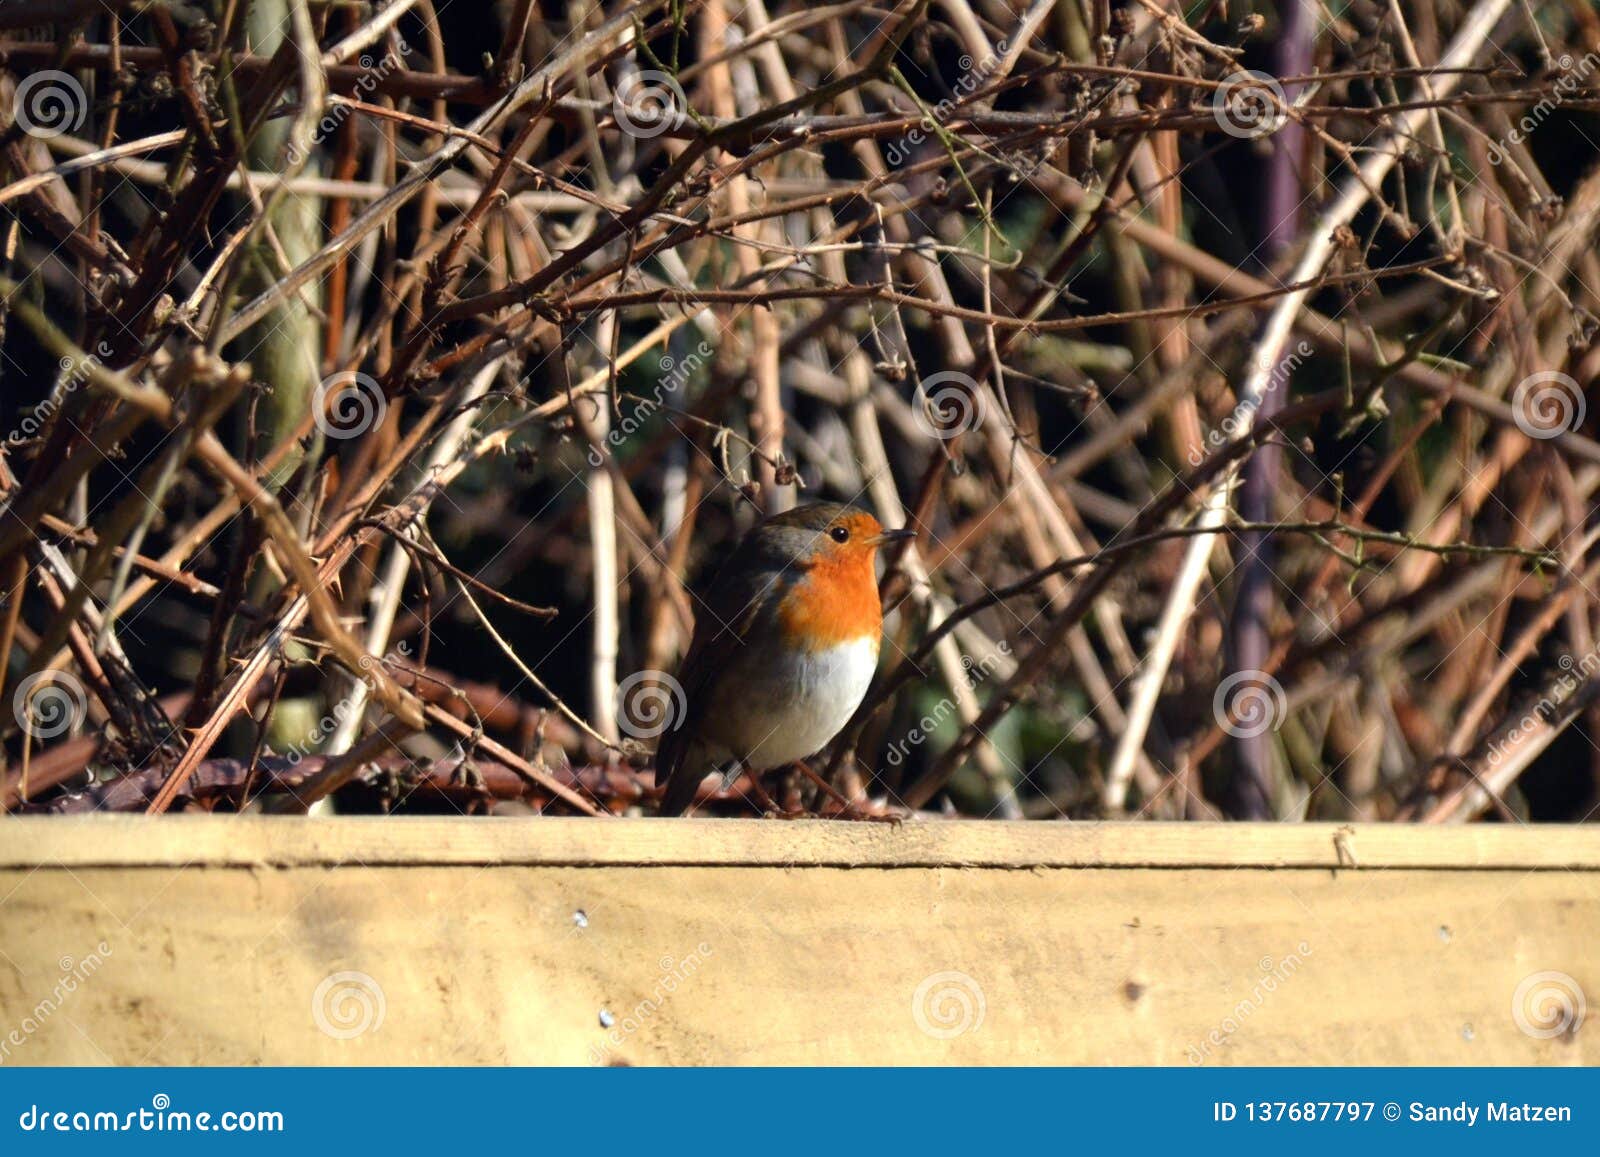 De zitting van Robin op een omheining in een tuin in Engeland tijdens de winter